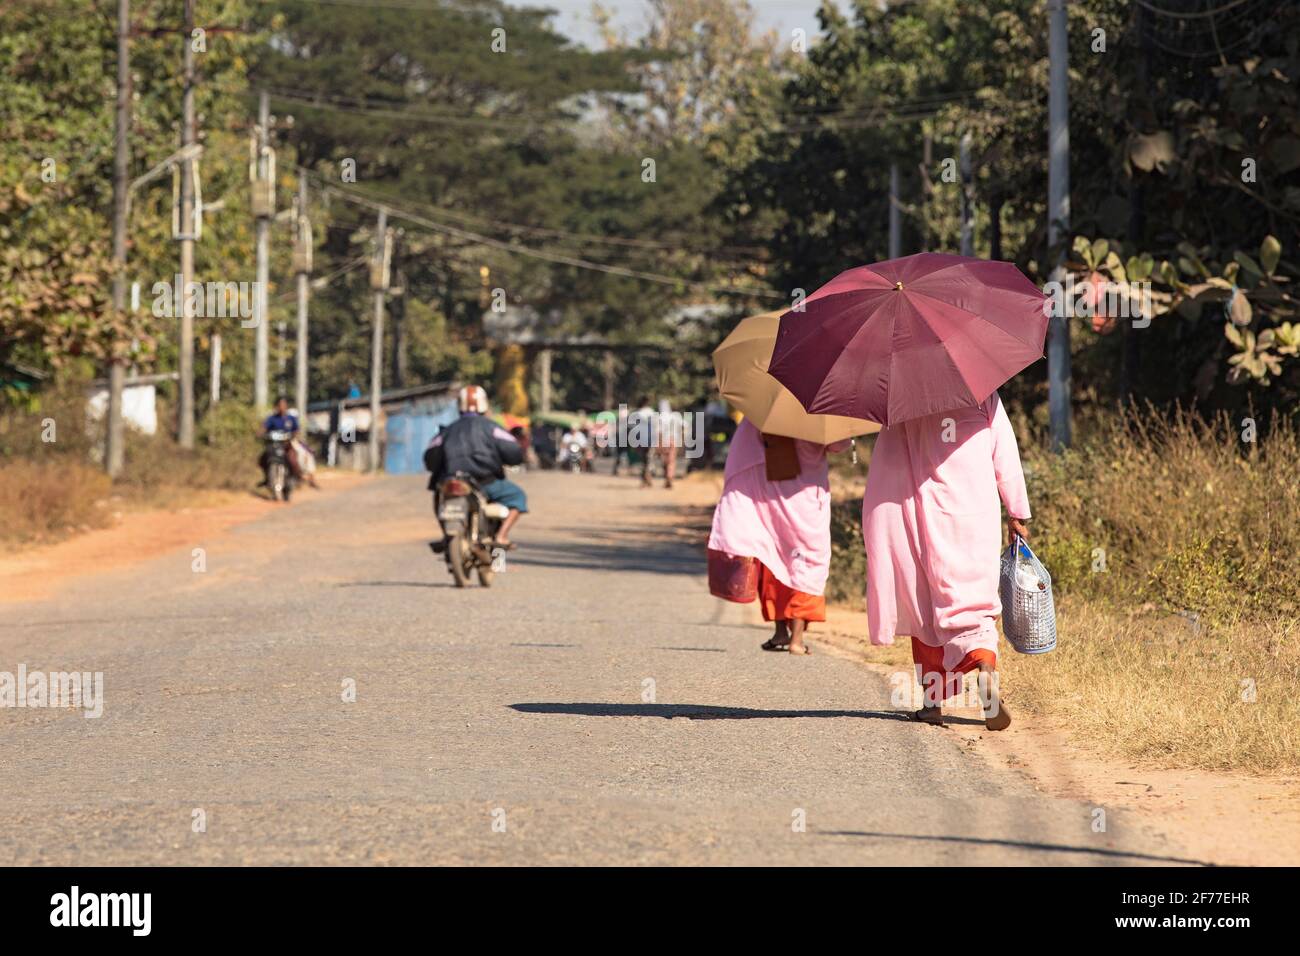 Dos monjas budistas birmanos caminando con paraguas bajo el sol abrasador de Bago, Myanmar (Birmania). Foto de stock